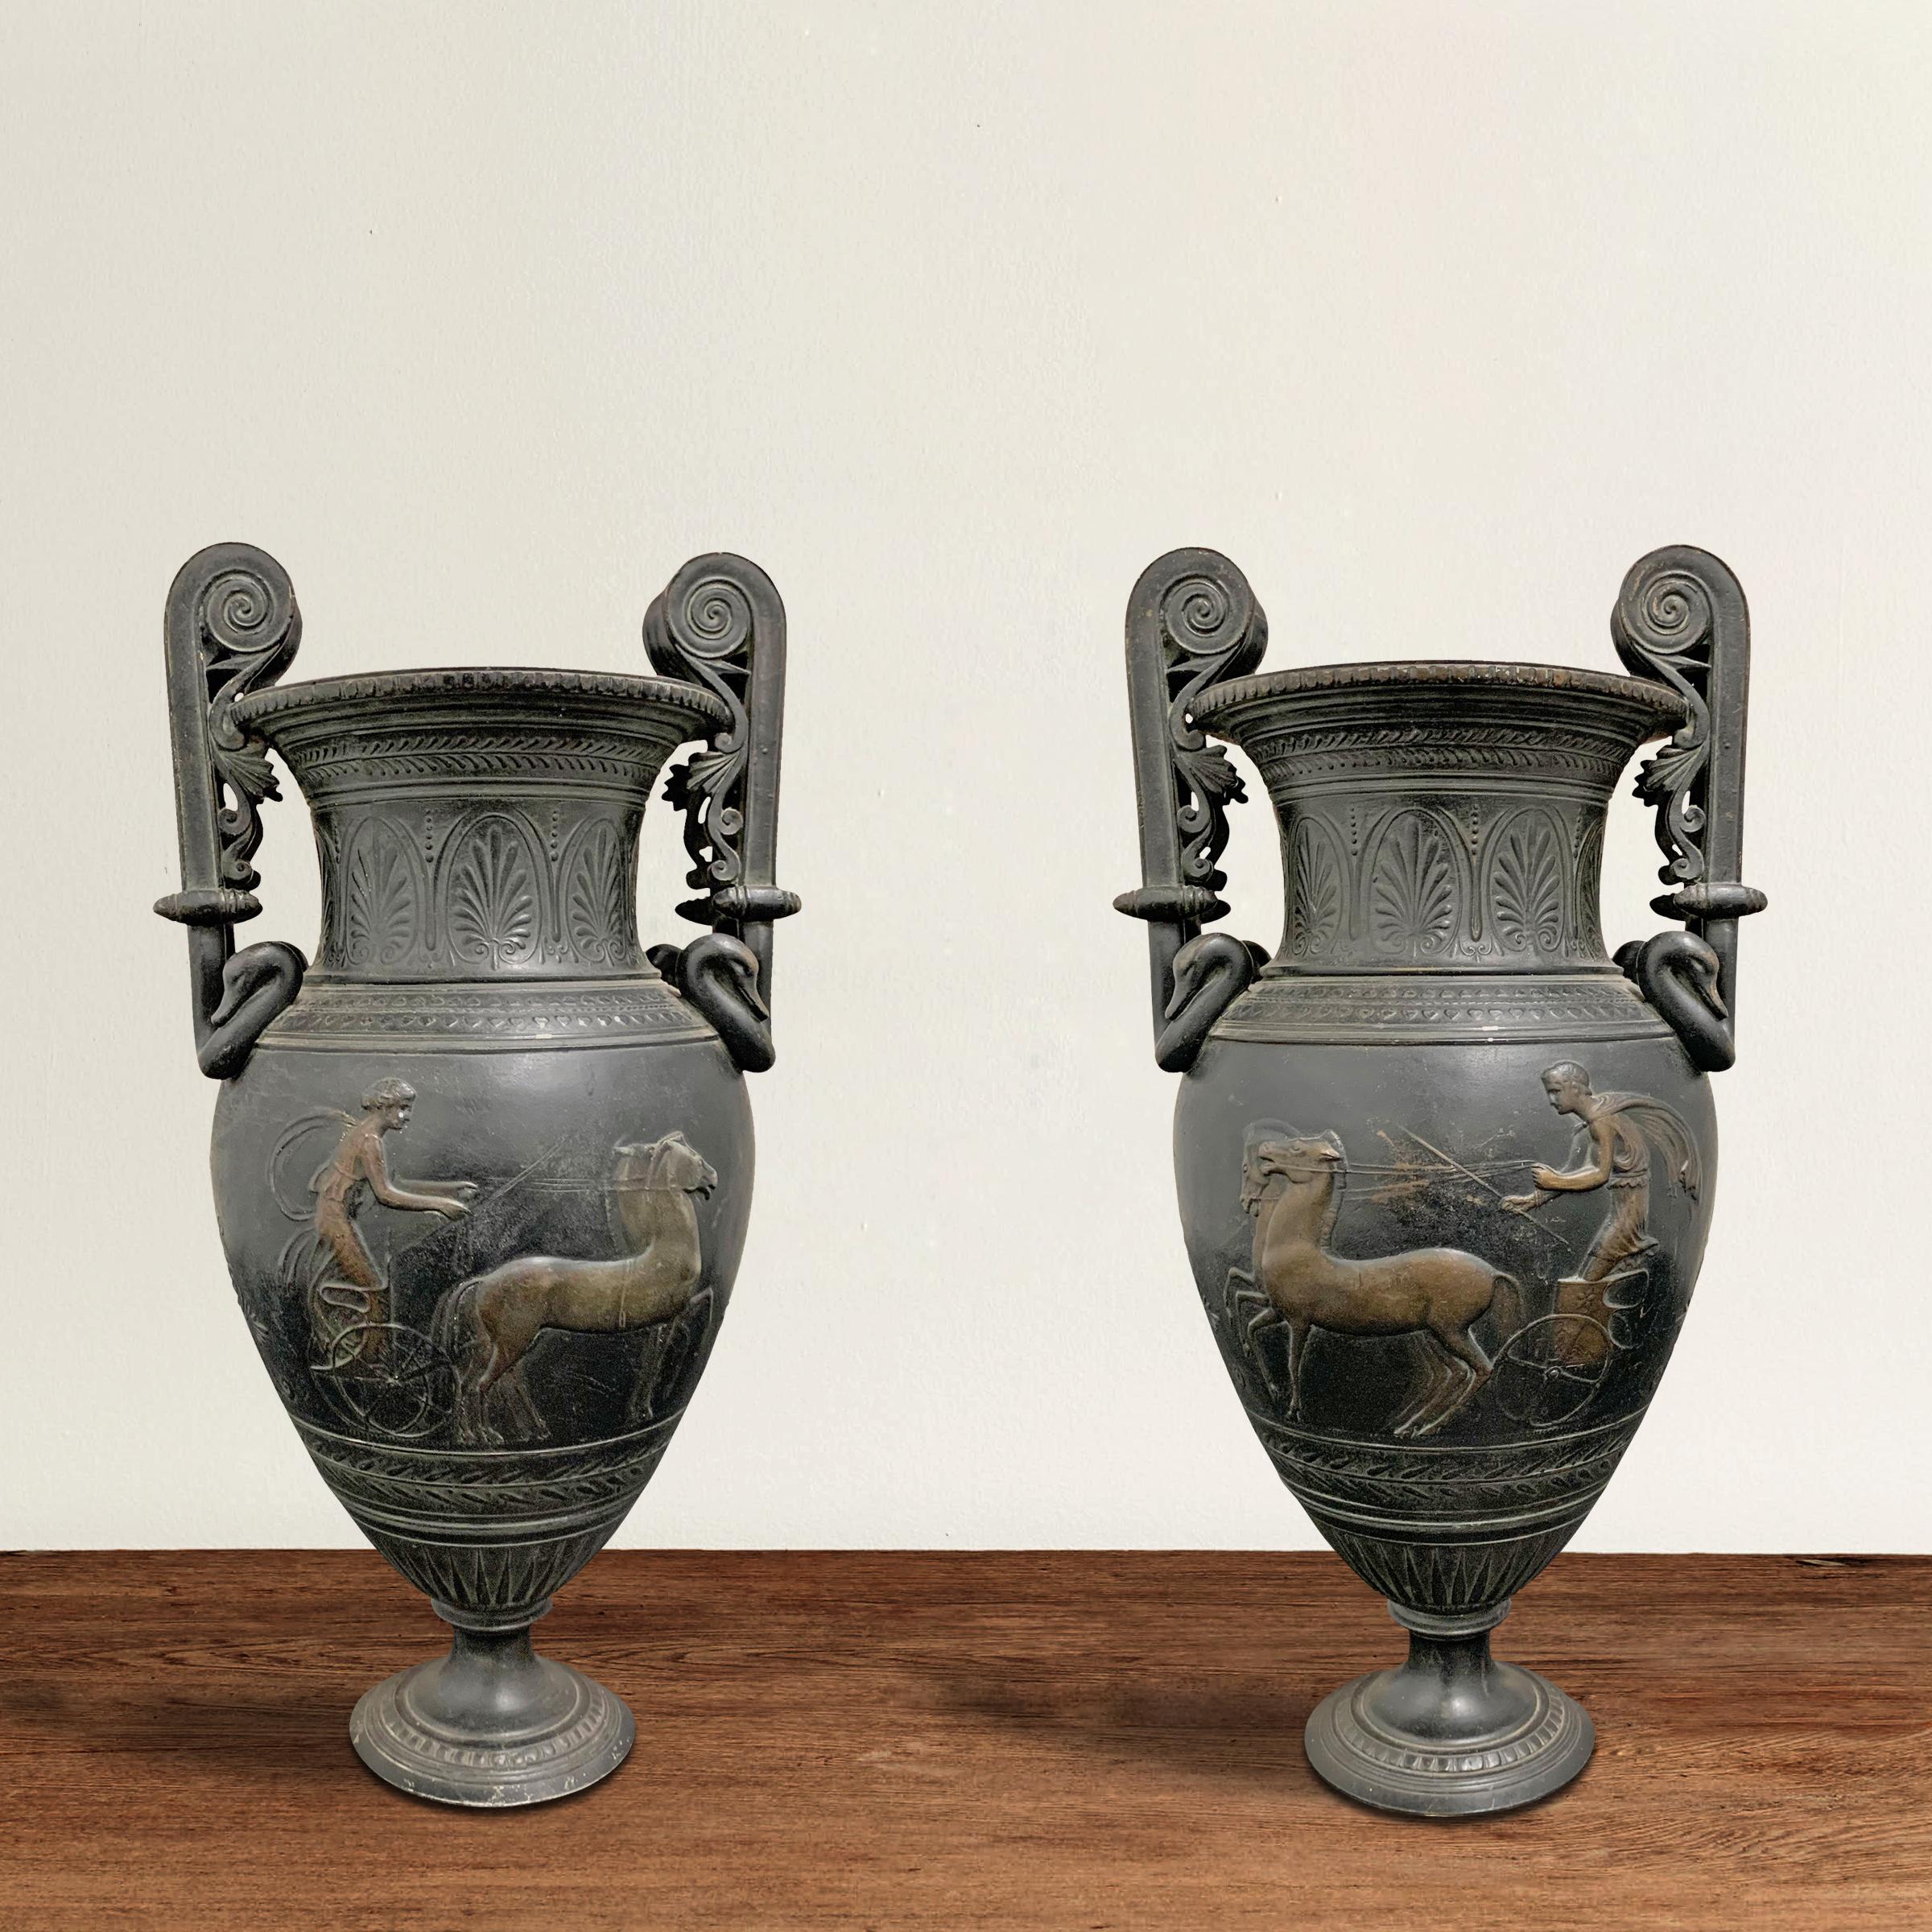 Une paire phénoménale d'urnes de style romain en bronze coulé français du début du 20e siècle avec des poignées en volute décorées de têtes d'oie, et une frise en bas-relief représentant un homme et une femme se poursuivant dans des chars tirés par